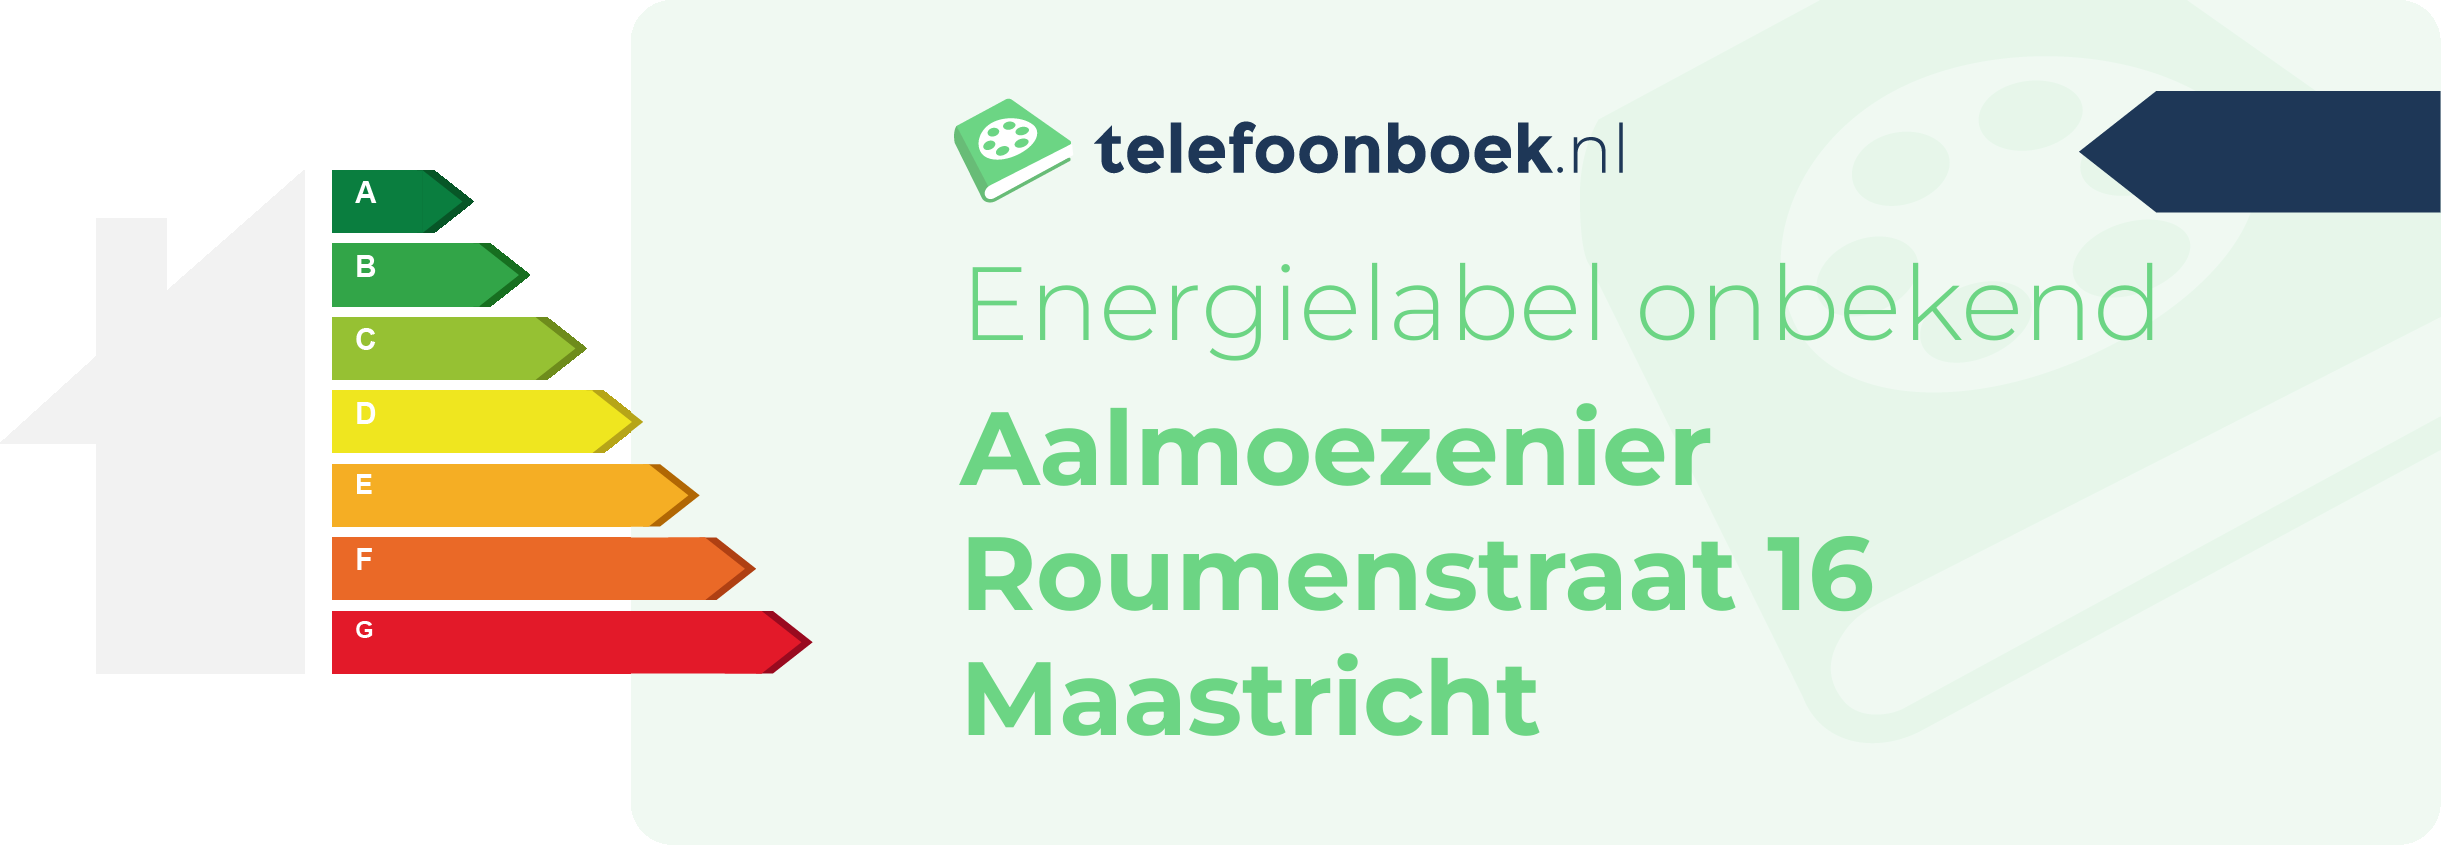 Energielabel Aalmoezenier Roumenstraat 16 Maastricht